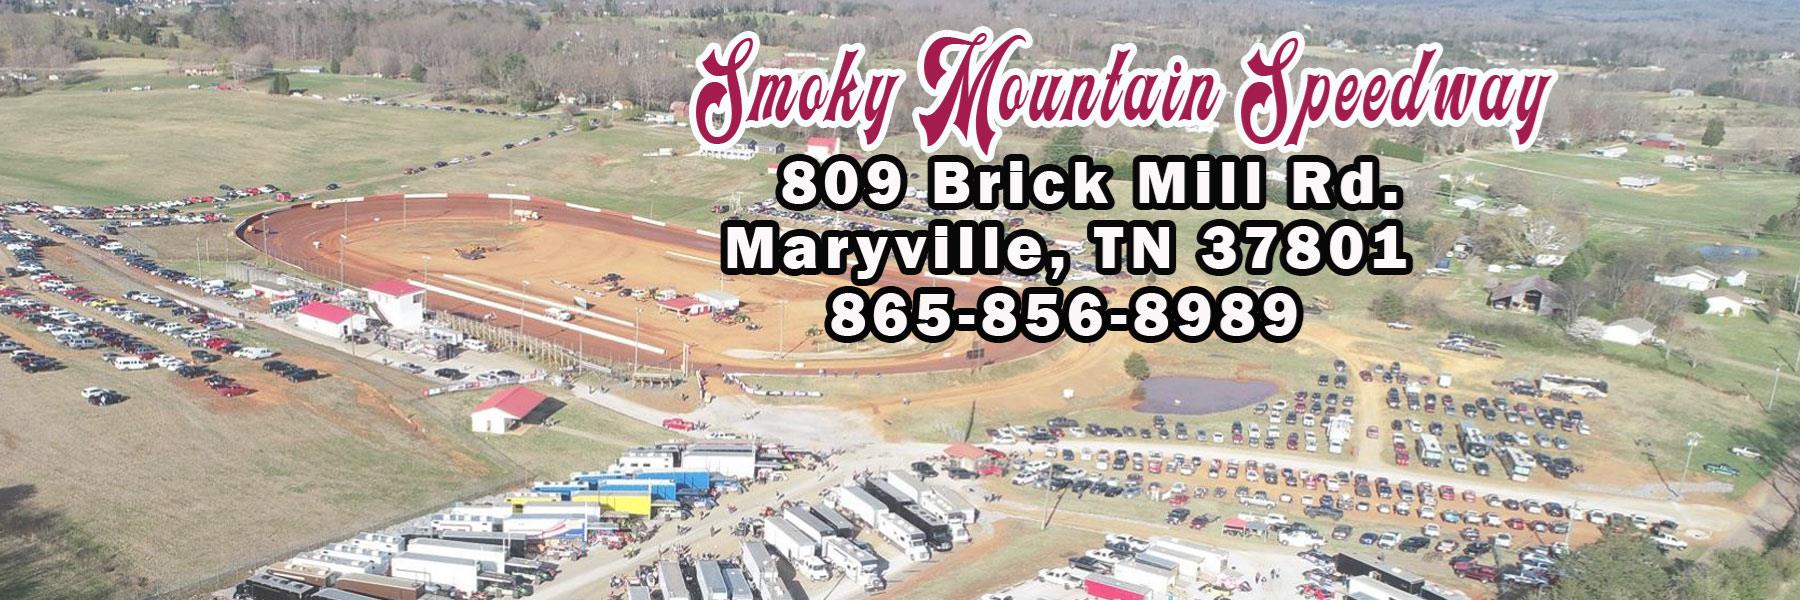 6/15/2019 - Smoky Mountain Speedway